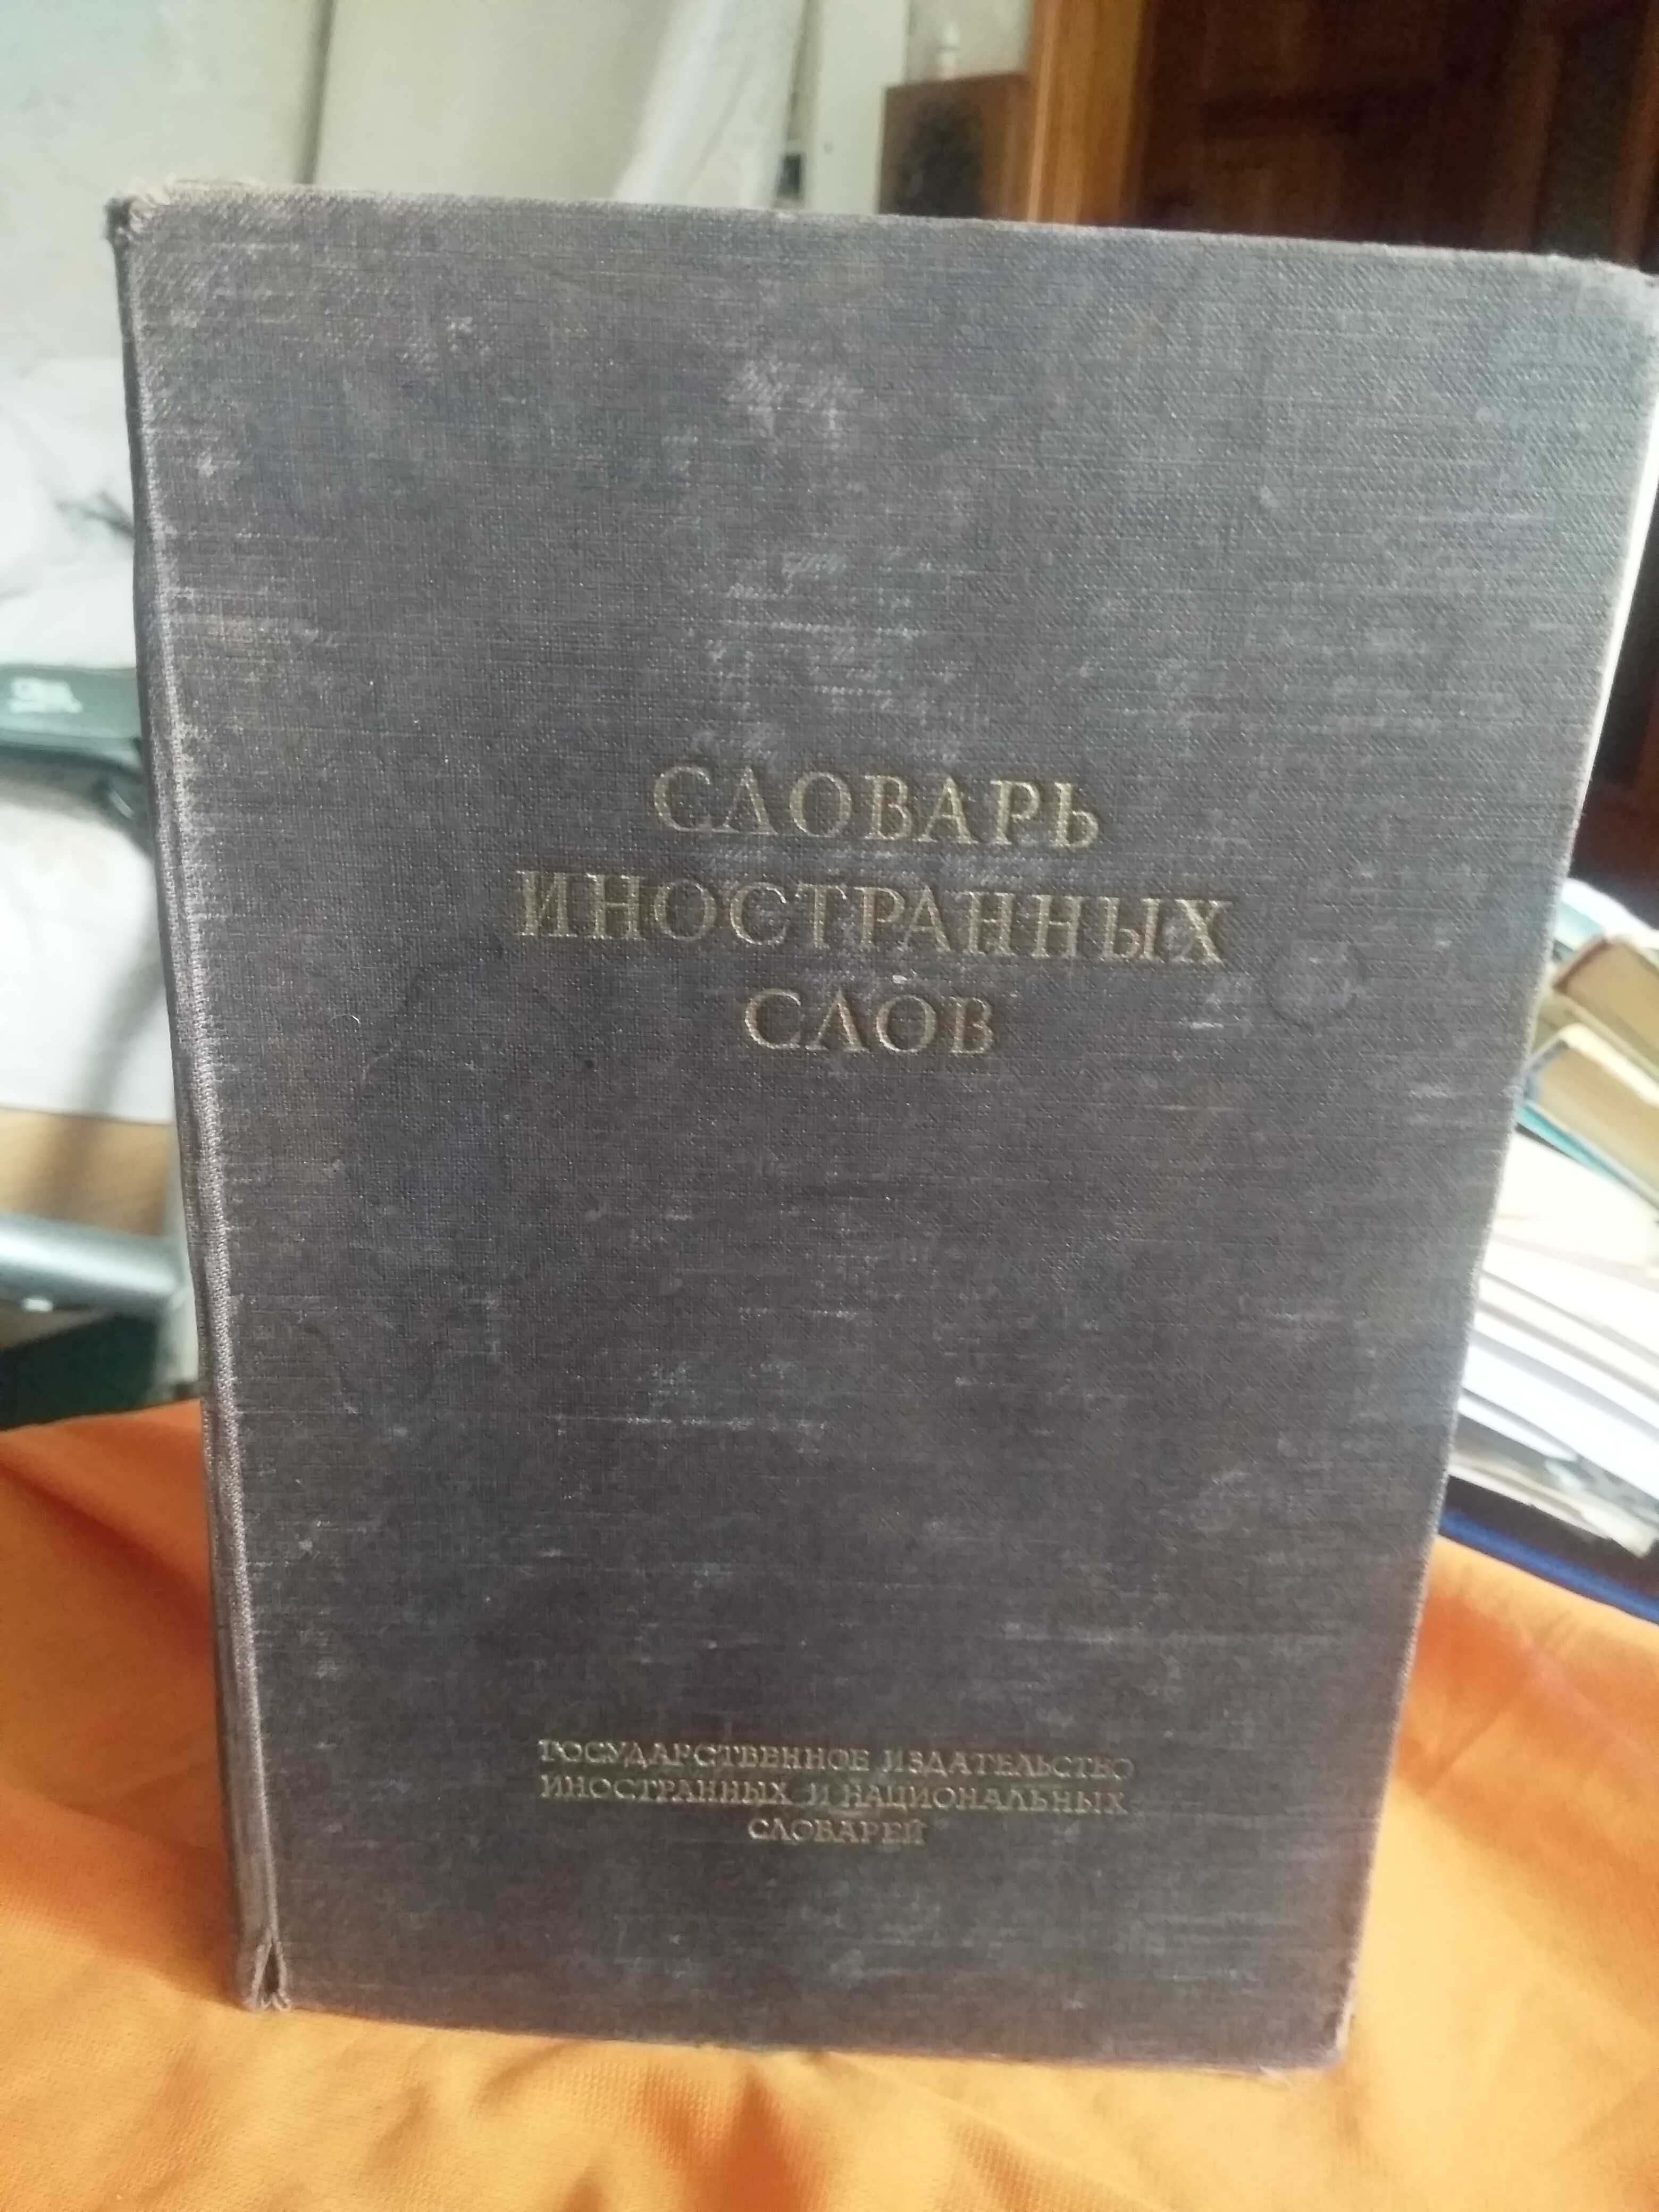 Словарь иностранных слов, 1949, М.